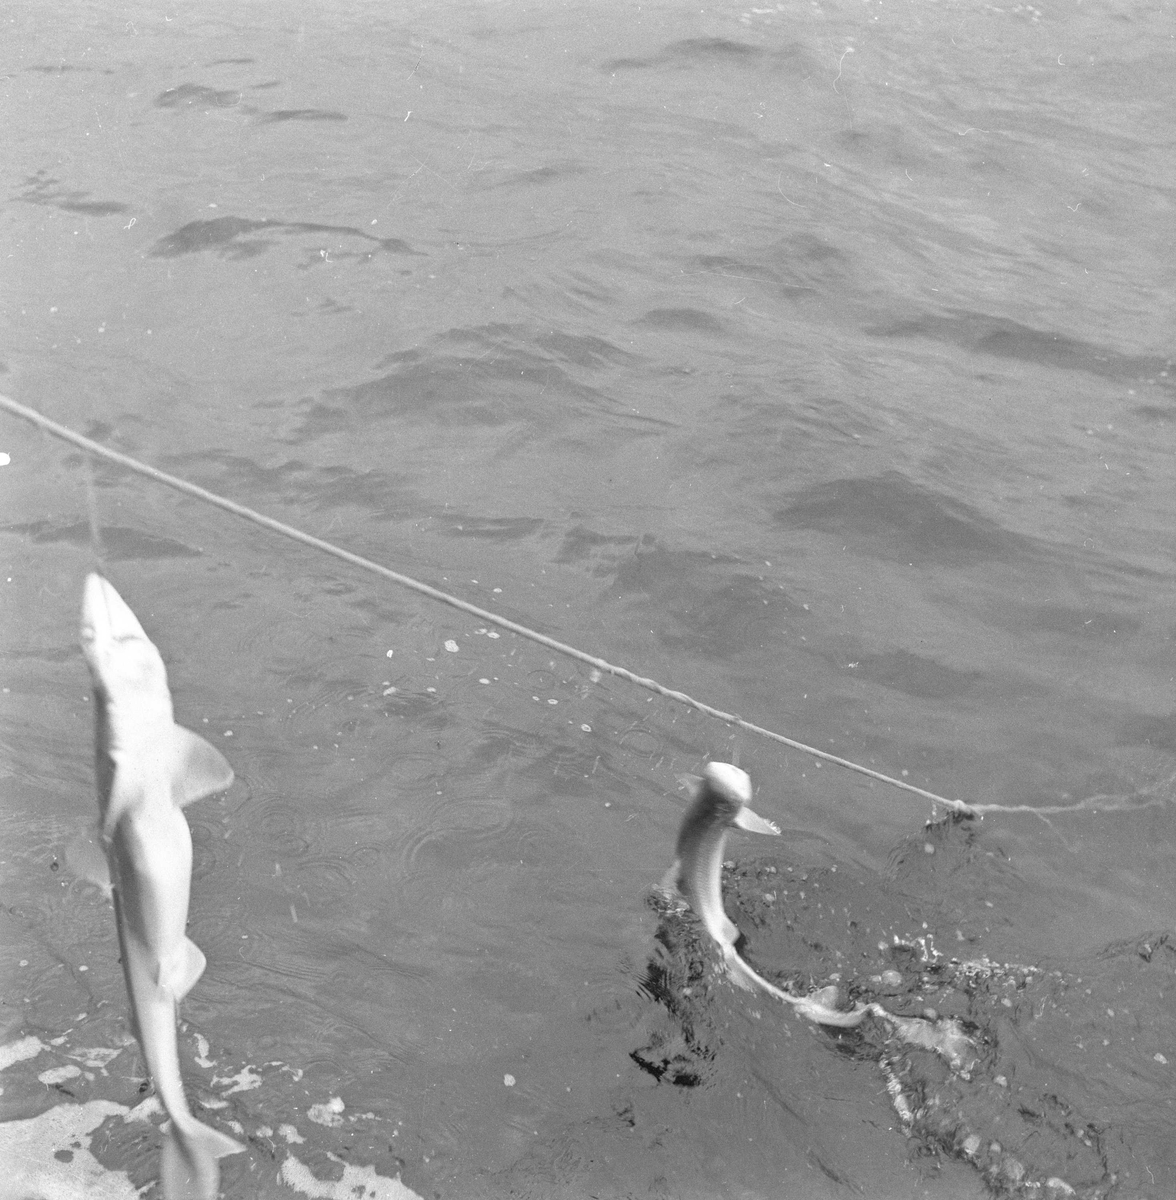 Pigghåfiske på Shetland.
Shetland, 14-22. mai 1958, to pigghå dingler fra fiskelina.